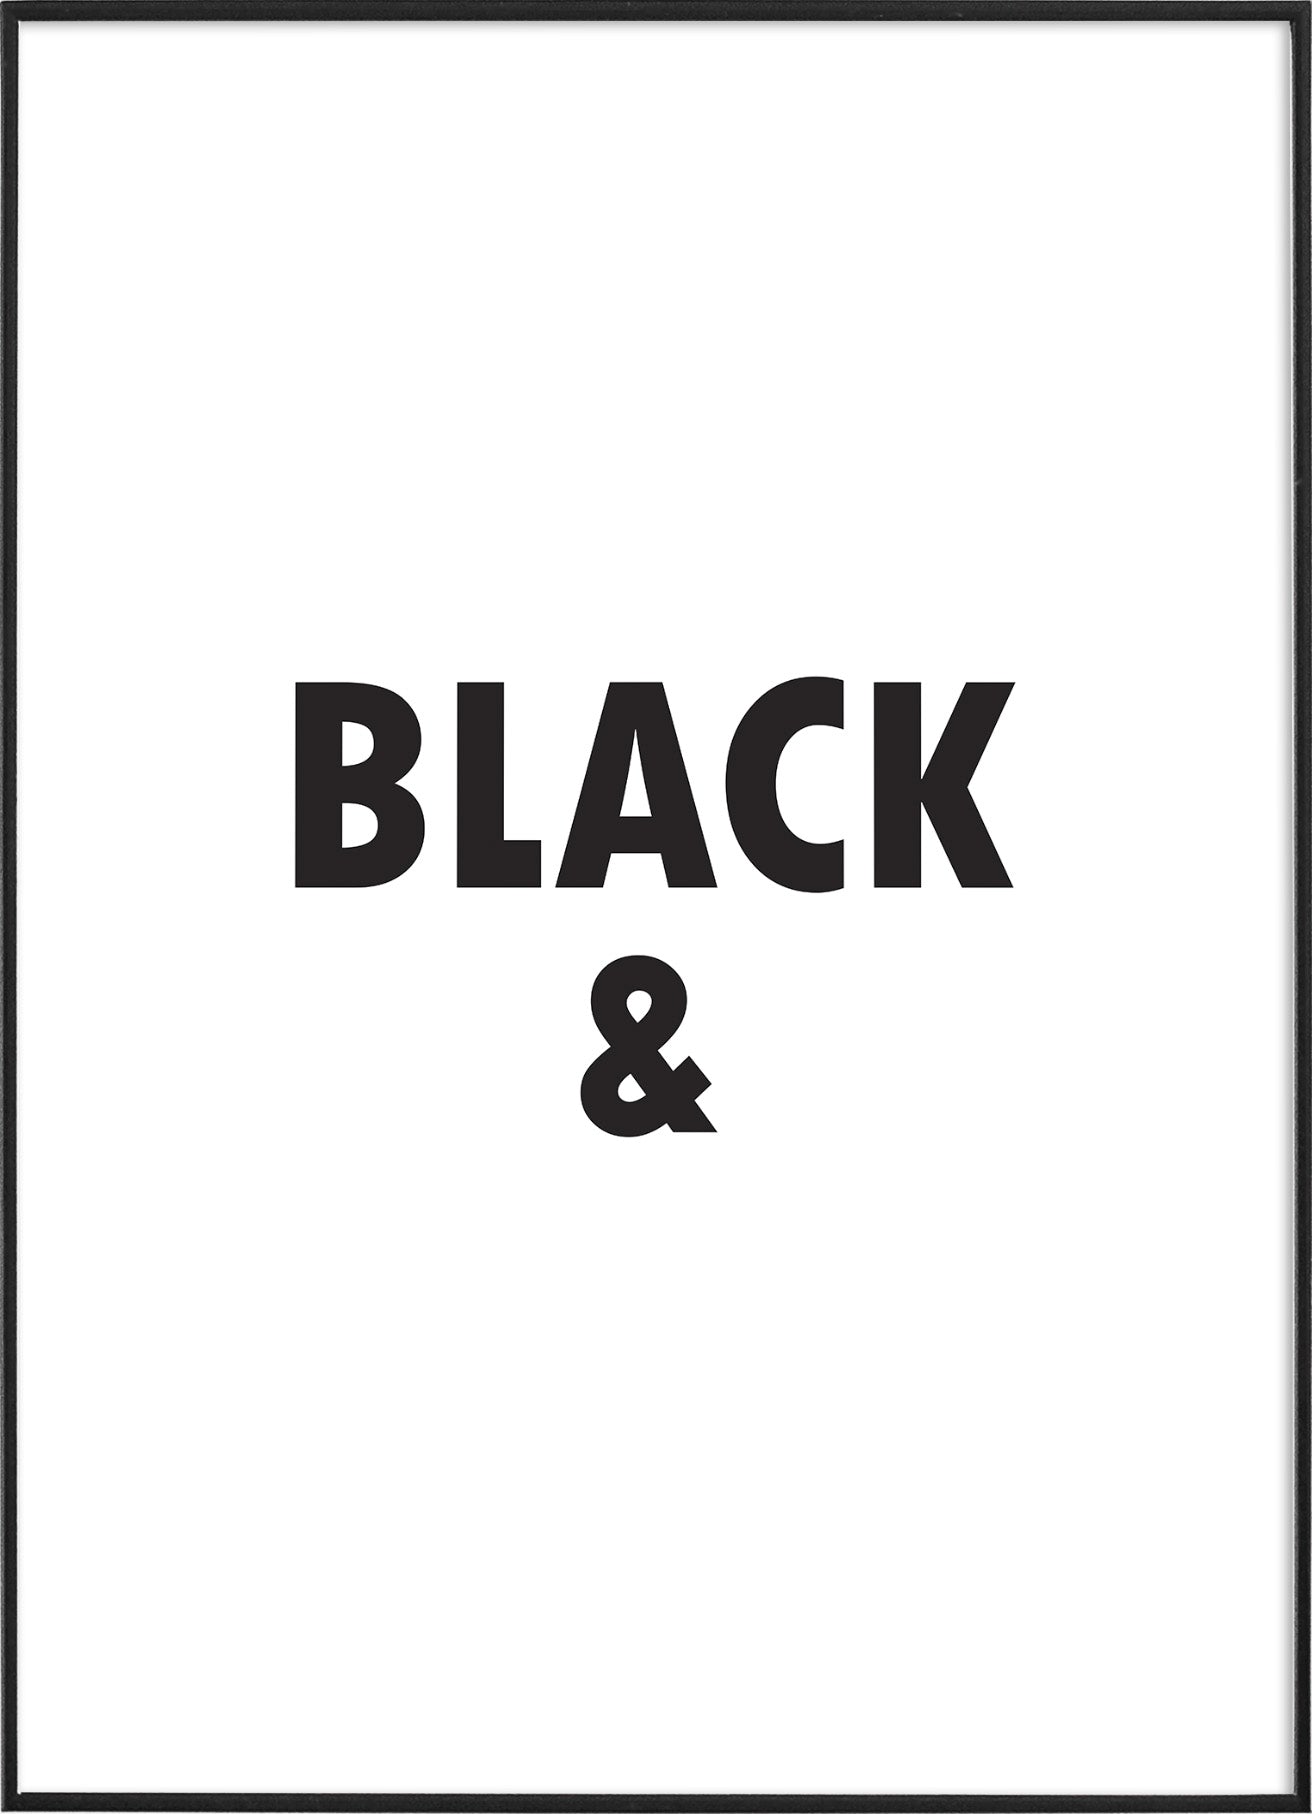 BLACK &PosterFinger Art PrintsMARY & FAP